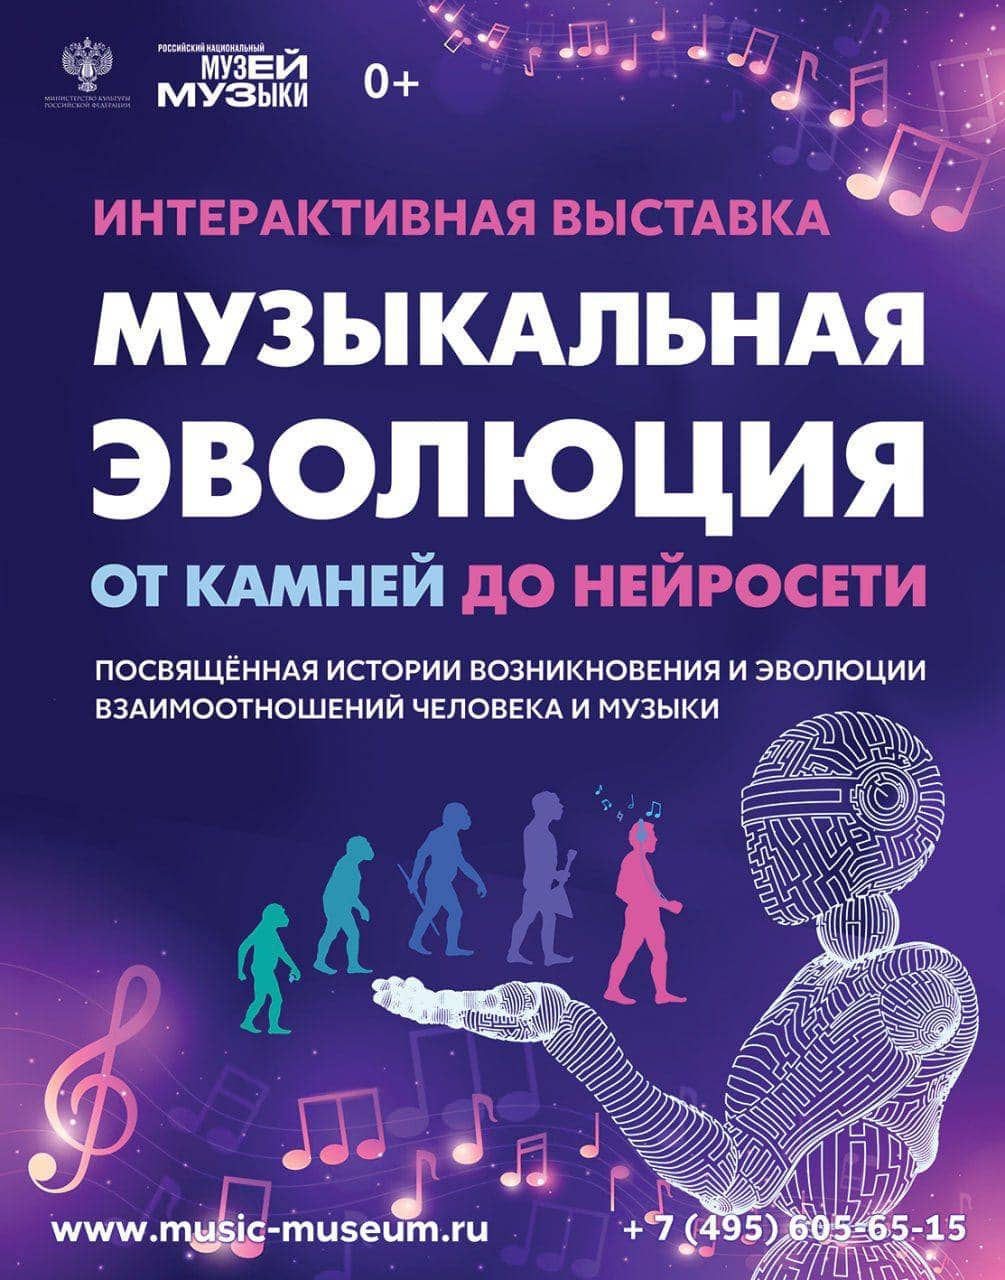 Российский национальный музей музыки представляет новый проект